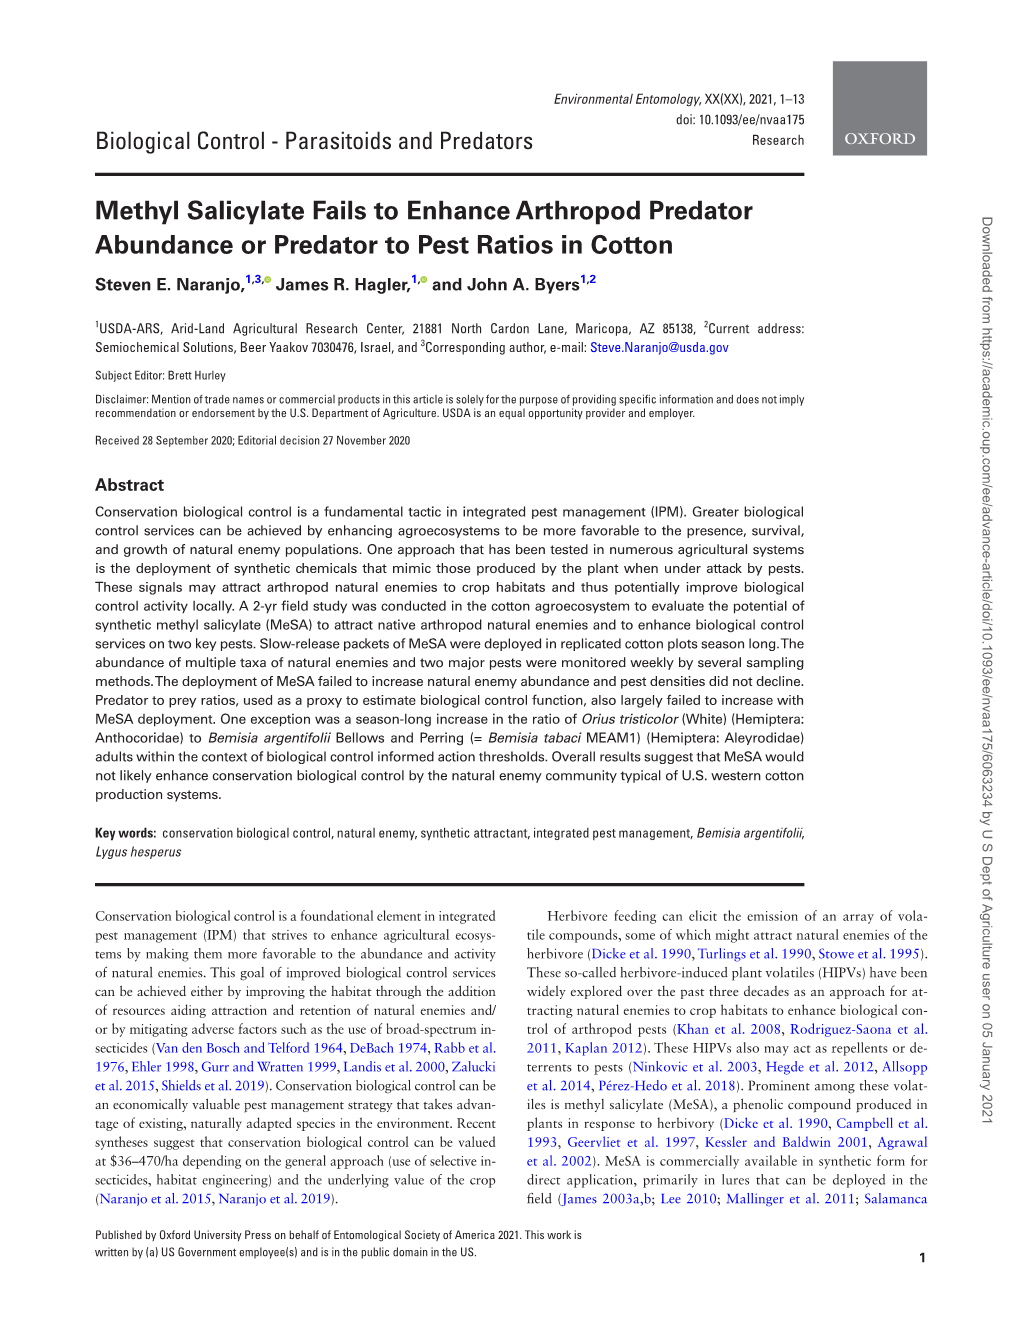 Methyl Salicylate Fails to Enhance Arthropod Predator Abundance Or